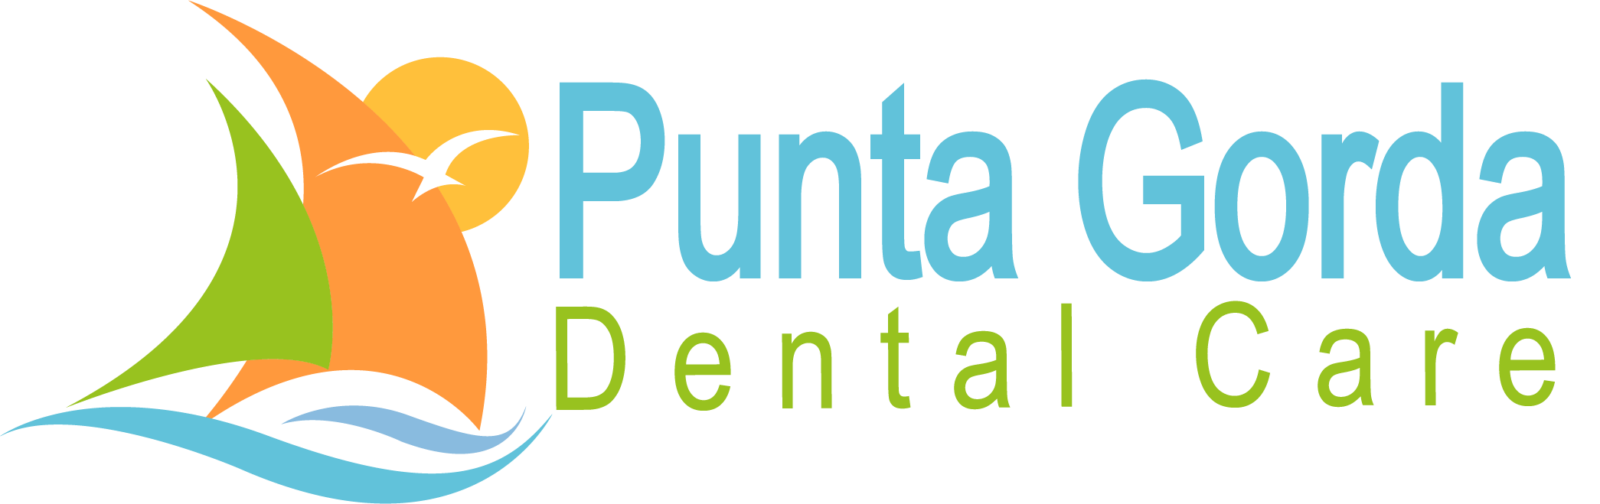 Punta Gorda Dental Care No Tagline transparent logo